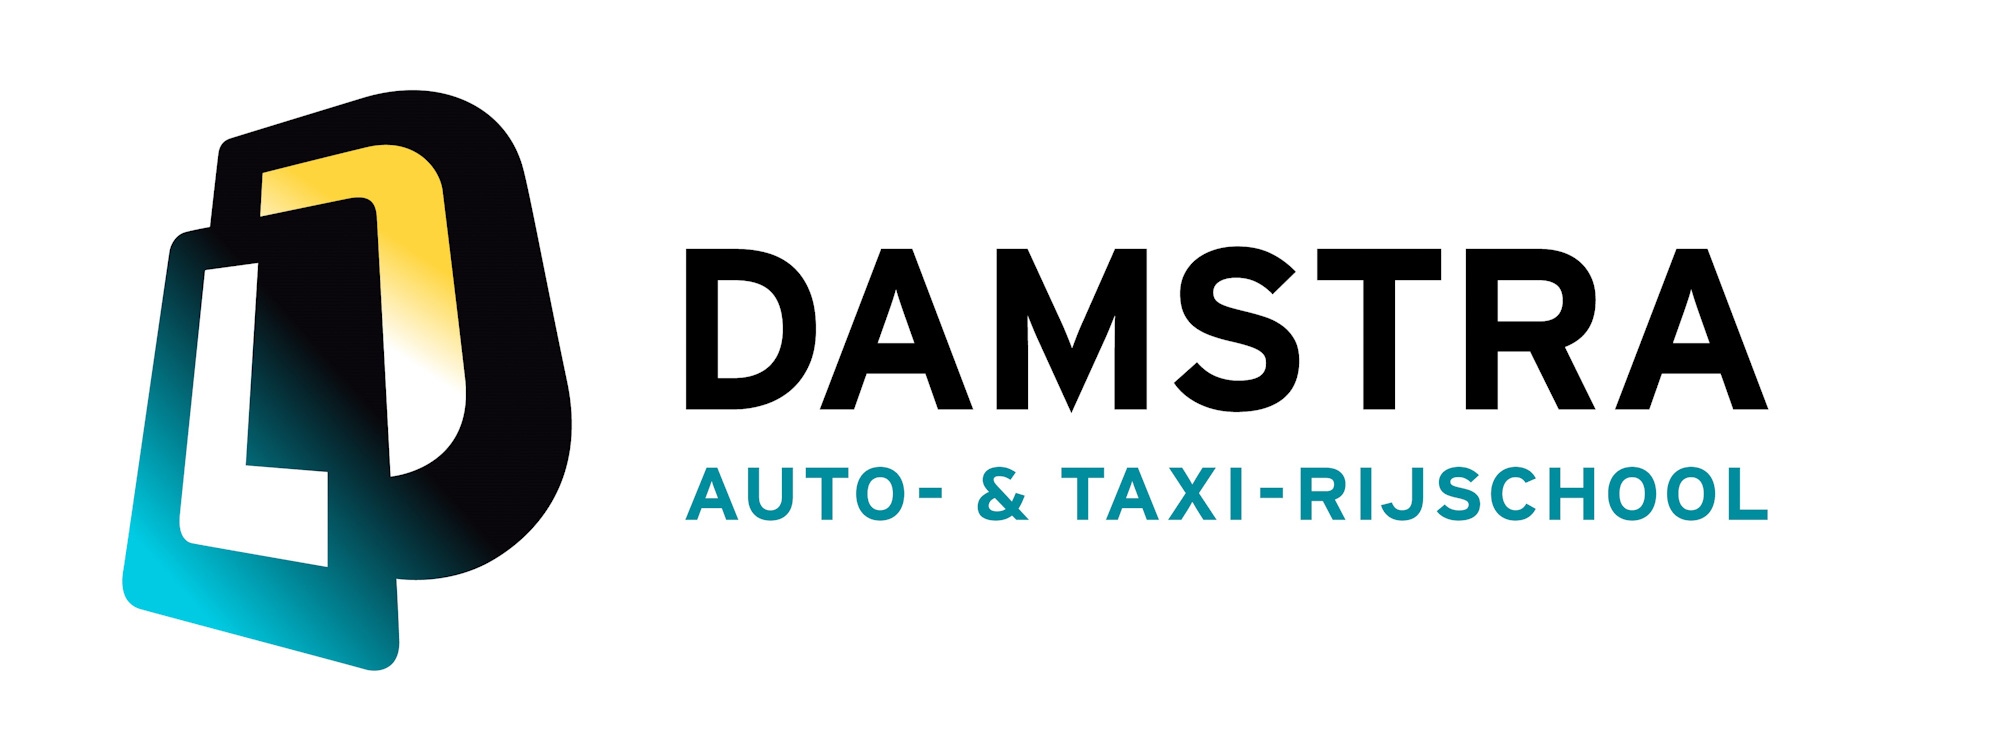 Damstra auto- & taxi-rijschool